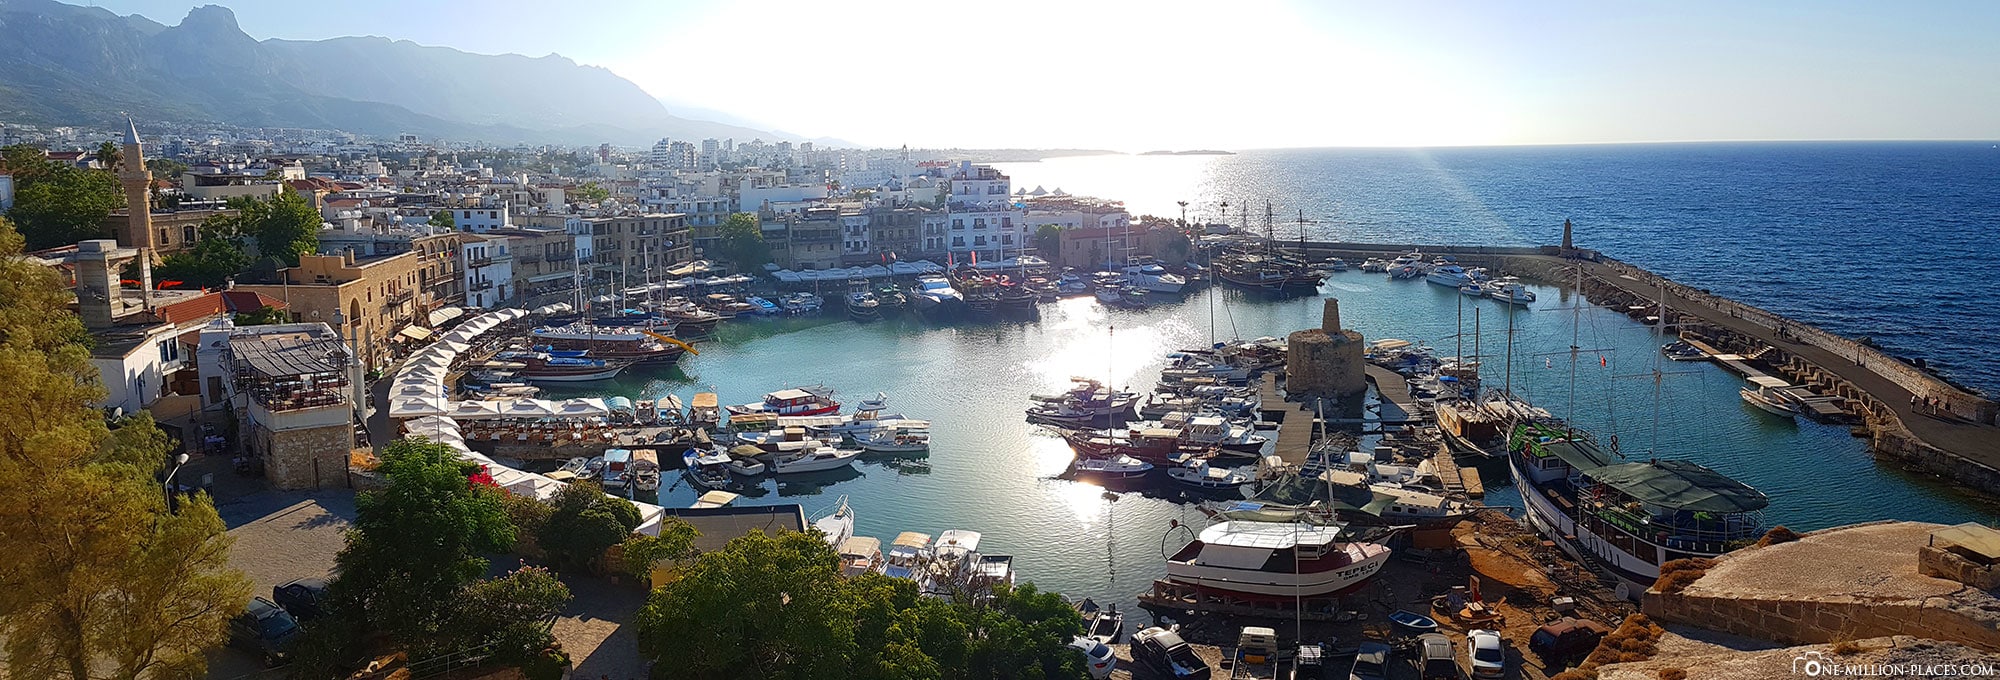 Panoramabild vom Hafen in Kyrenia, Zypern, Nordzypern, Sehenswürdigkeiten, Reisebericht